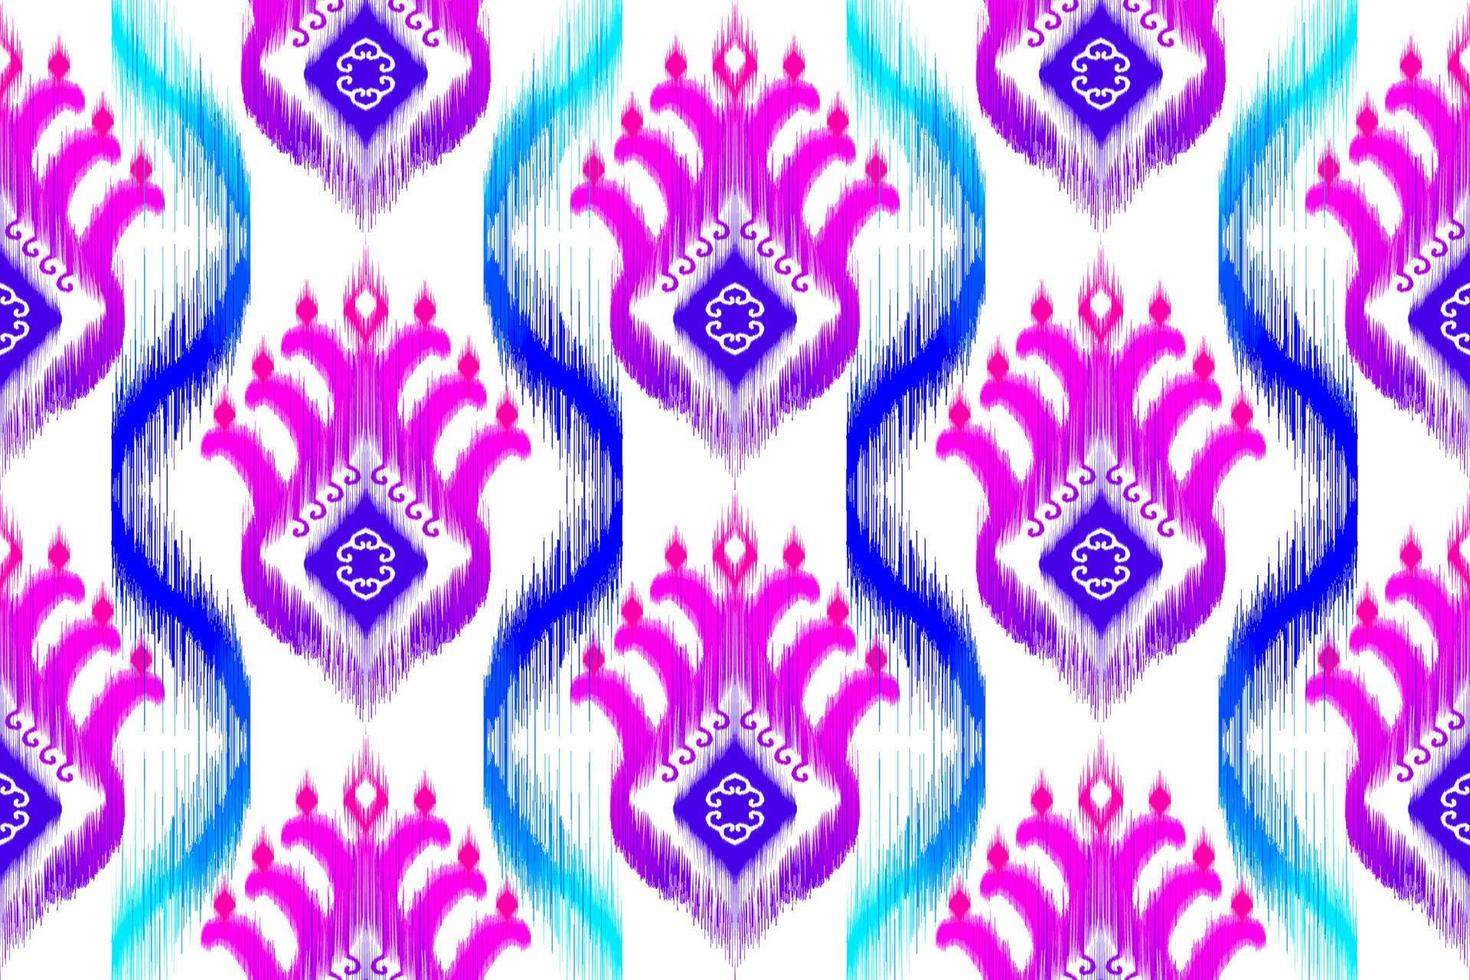 abstraktes geometrisches ikat-ethnisches musterdesign. aztekischer Stoff Teppich Mandala Ornamente Textildekorationen Tapete. tribal boho native ethnische türkei traditionelle stickerei vektor hintergrund